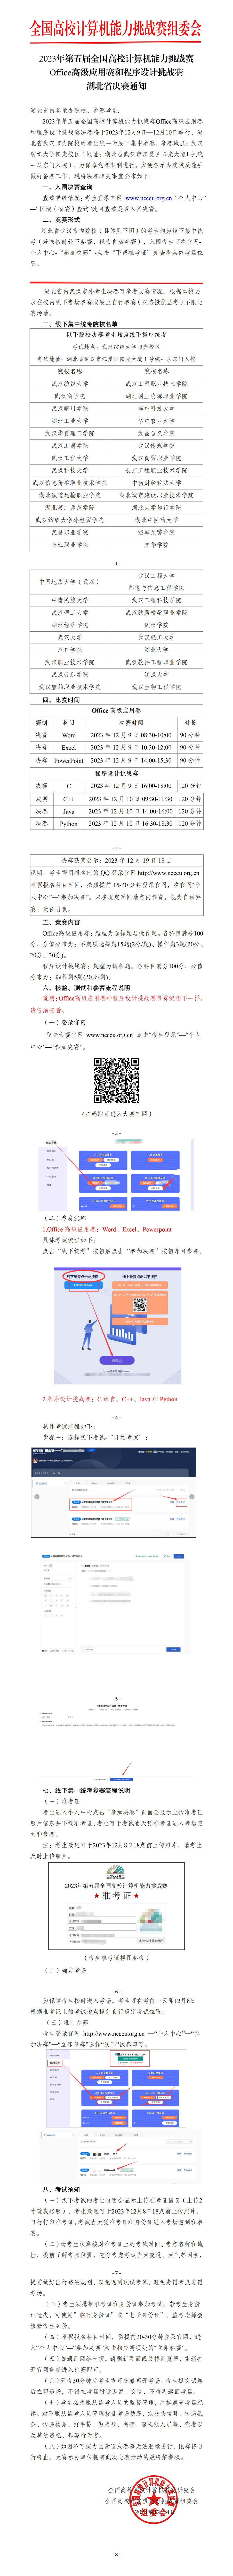 12.5【湖北省决赛通知】office高级应用赛与程序设计挑战赛_01.png